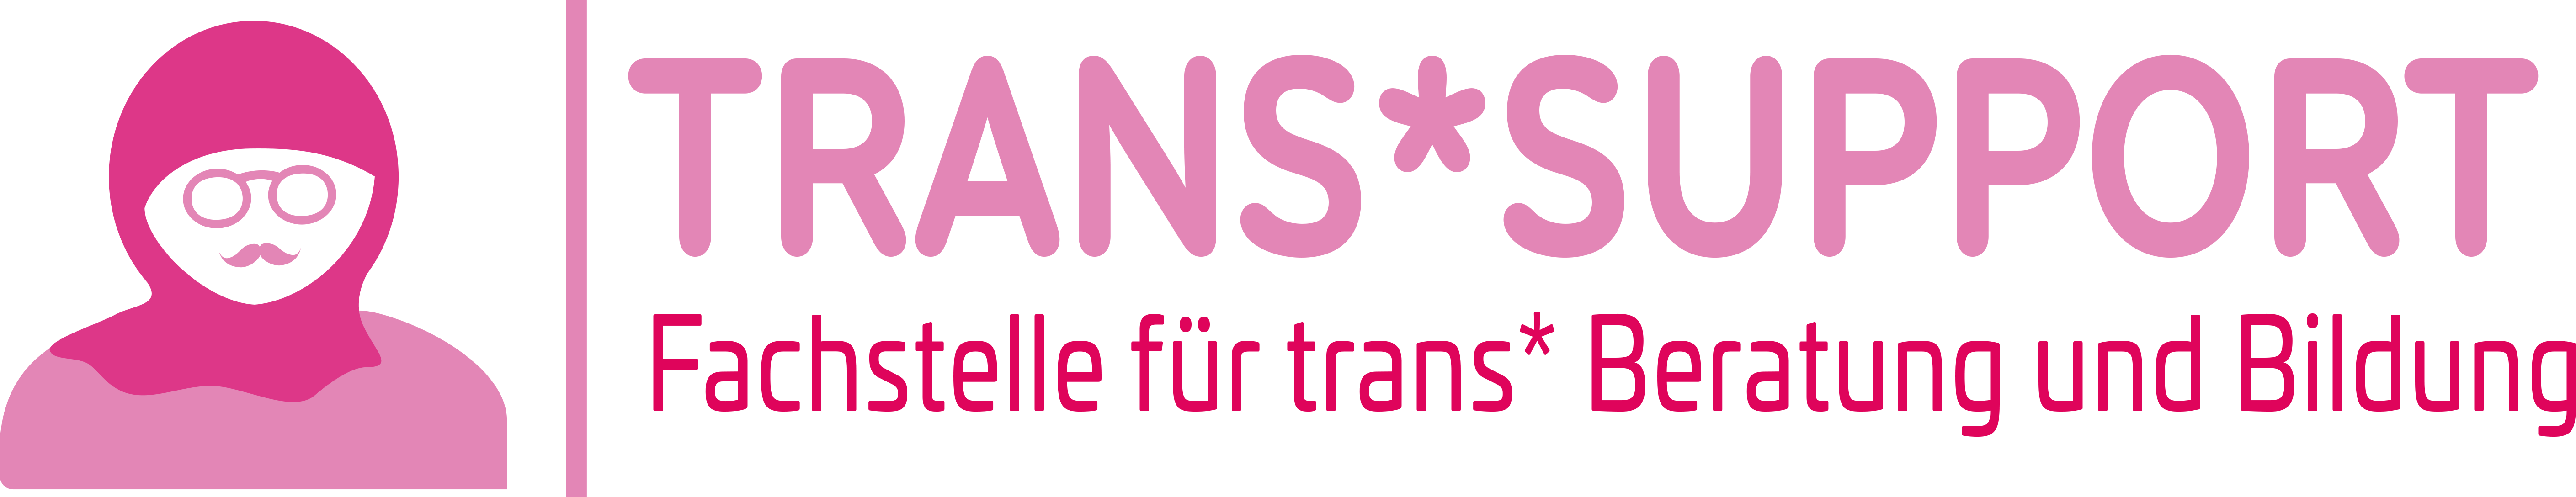 trans*support | Fachstelle für trans* Beratung und Bildung e.V.